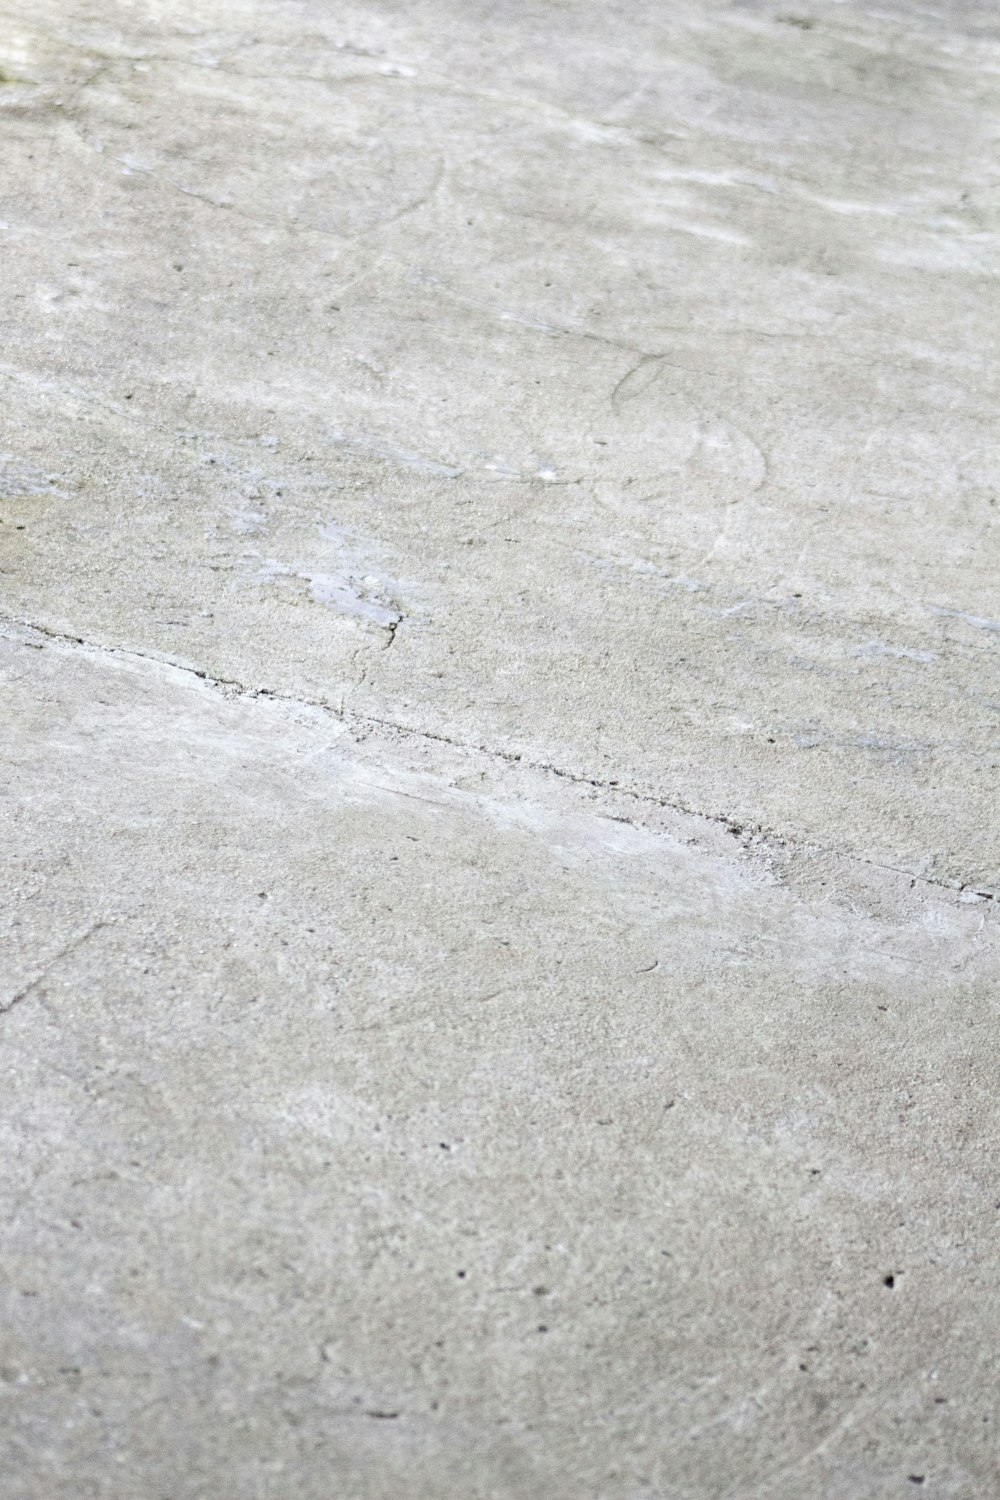 uma pessoa andando de skate em uma superfície de concreto